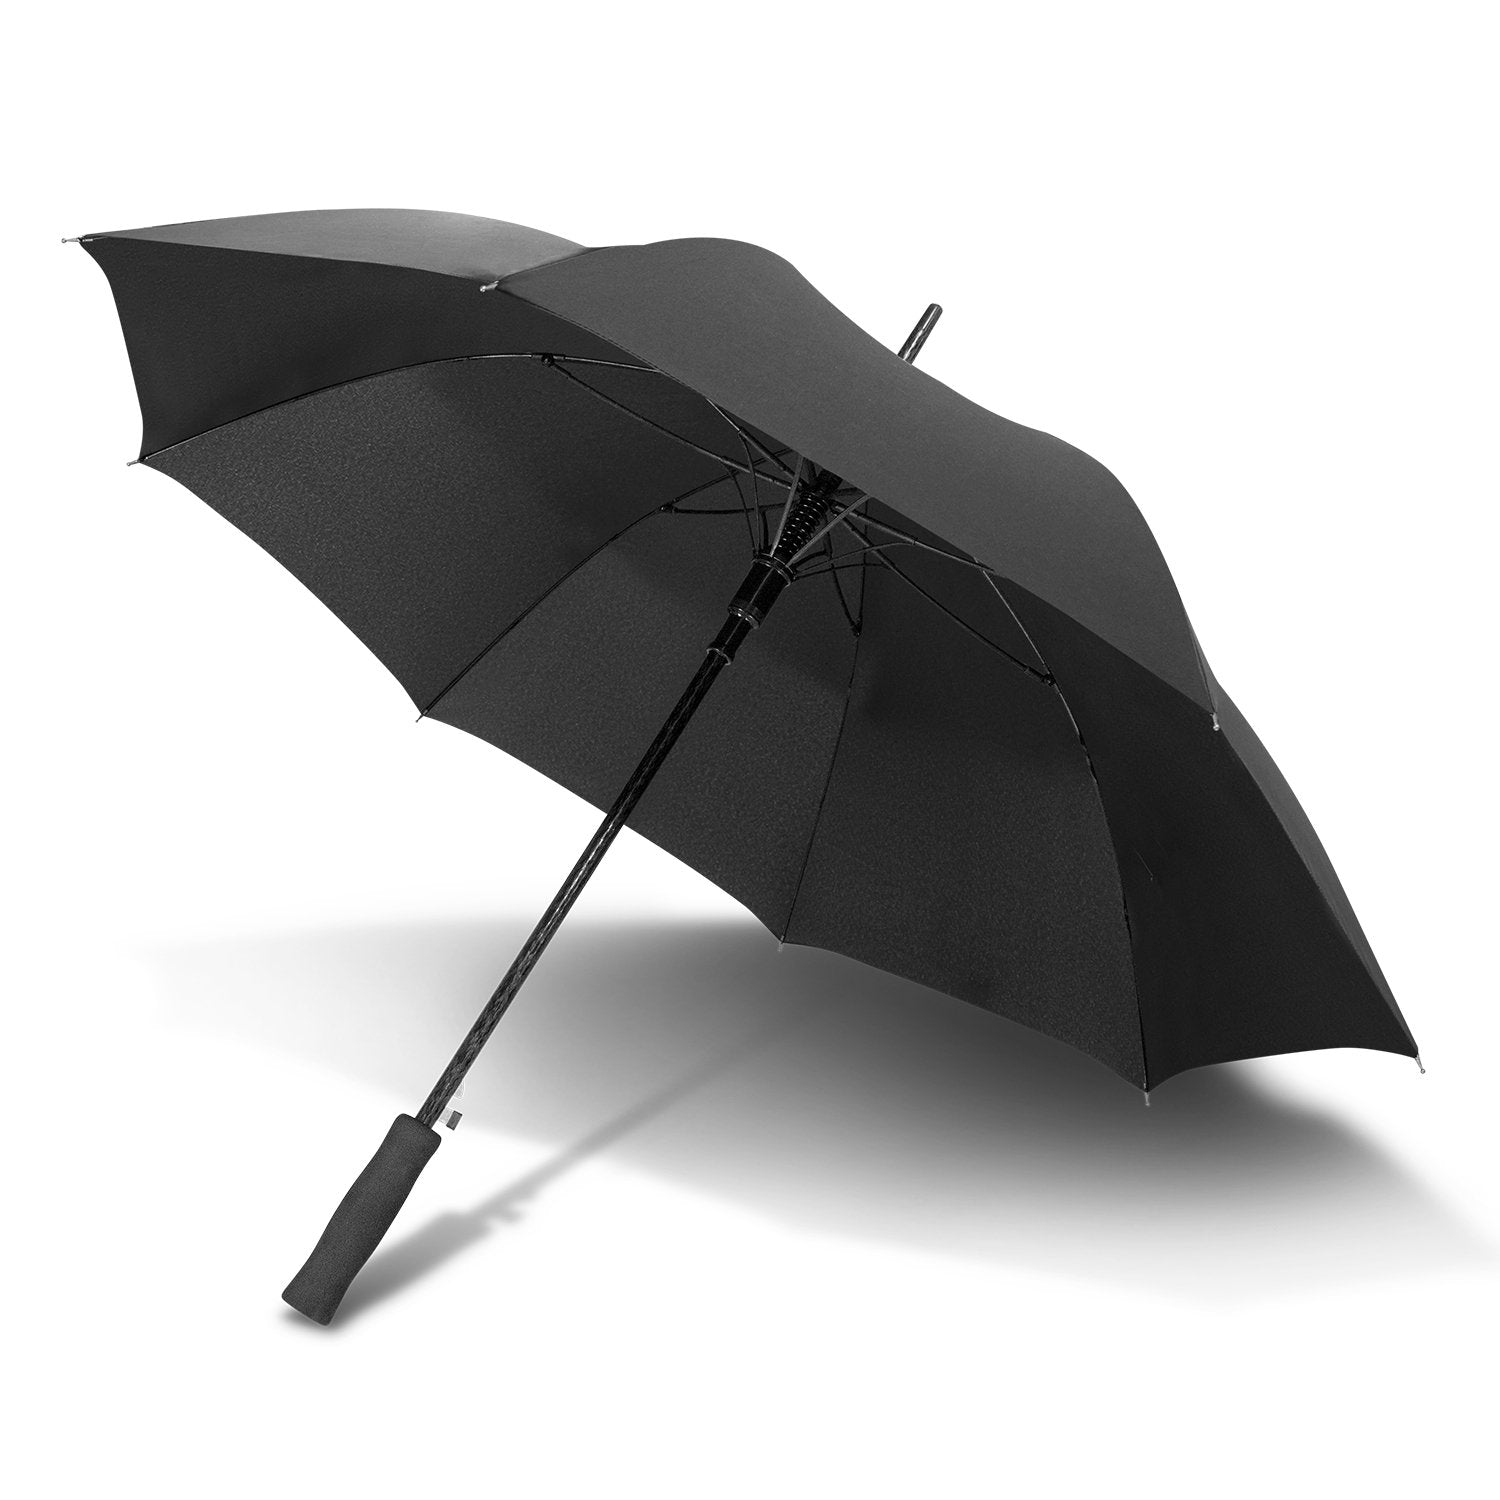 STORM-PROOF®️-heavy-duty-personal-umbrella-windproof-umbrella-auto-open-black-umbrella